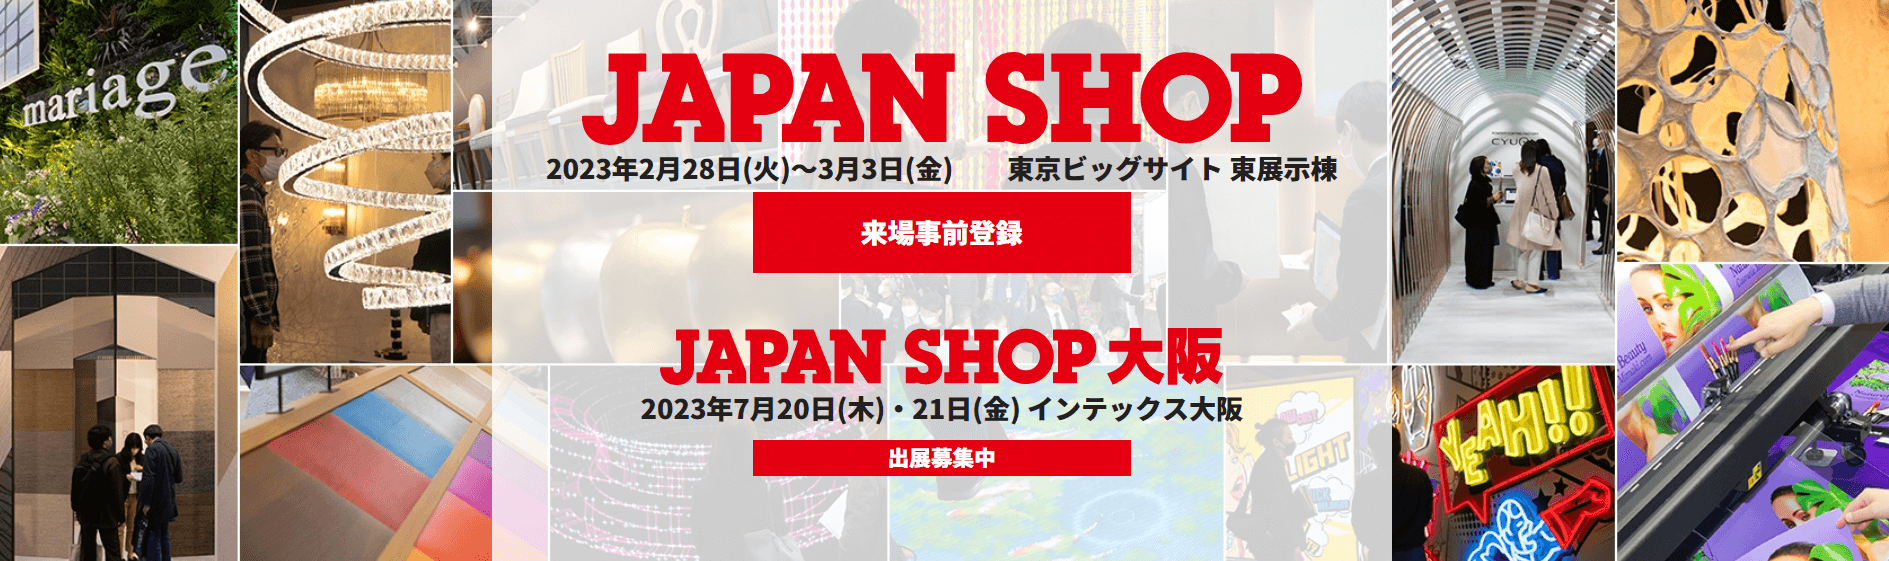 JAPAN SHOP2023